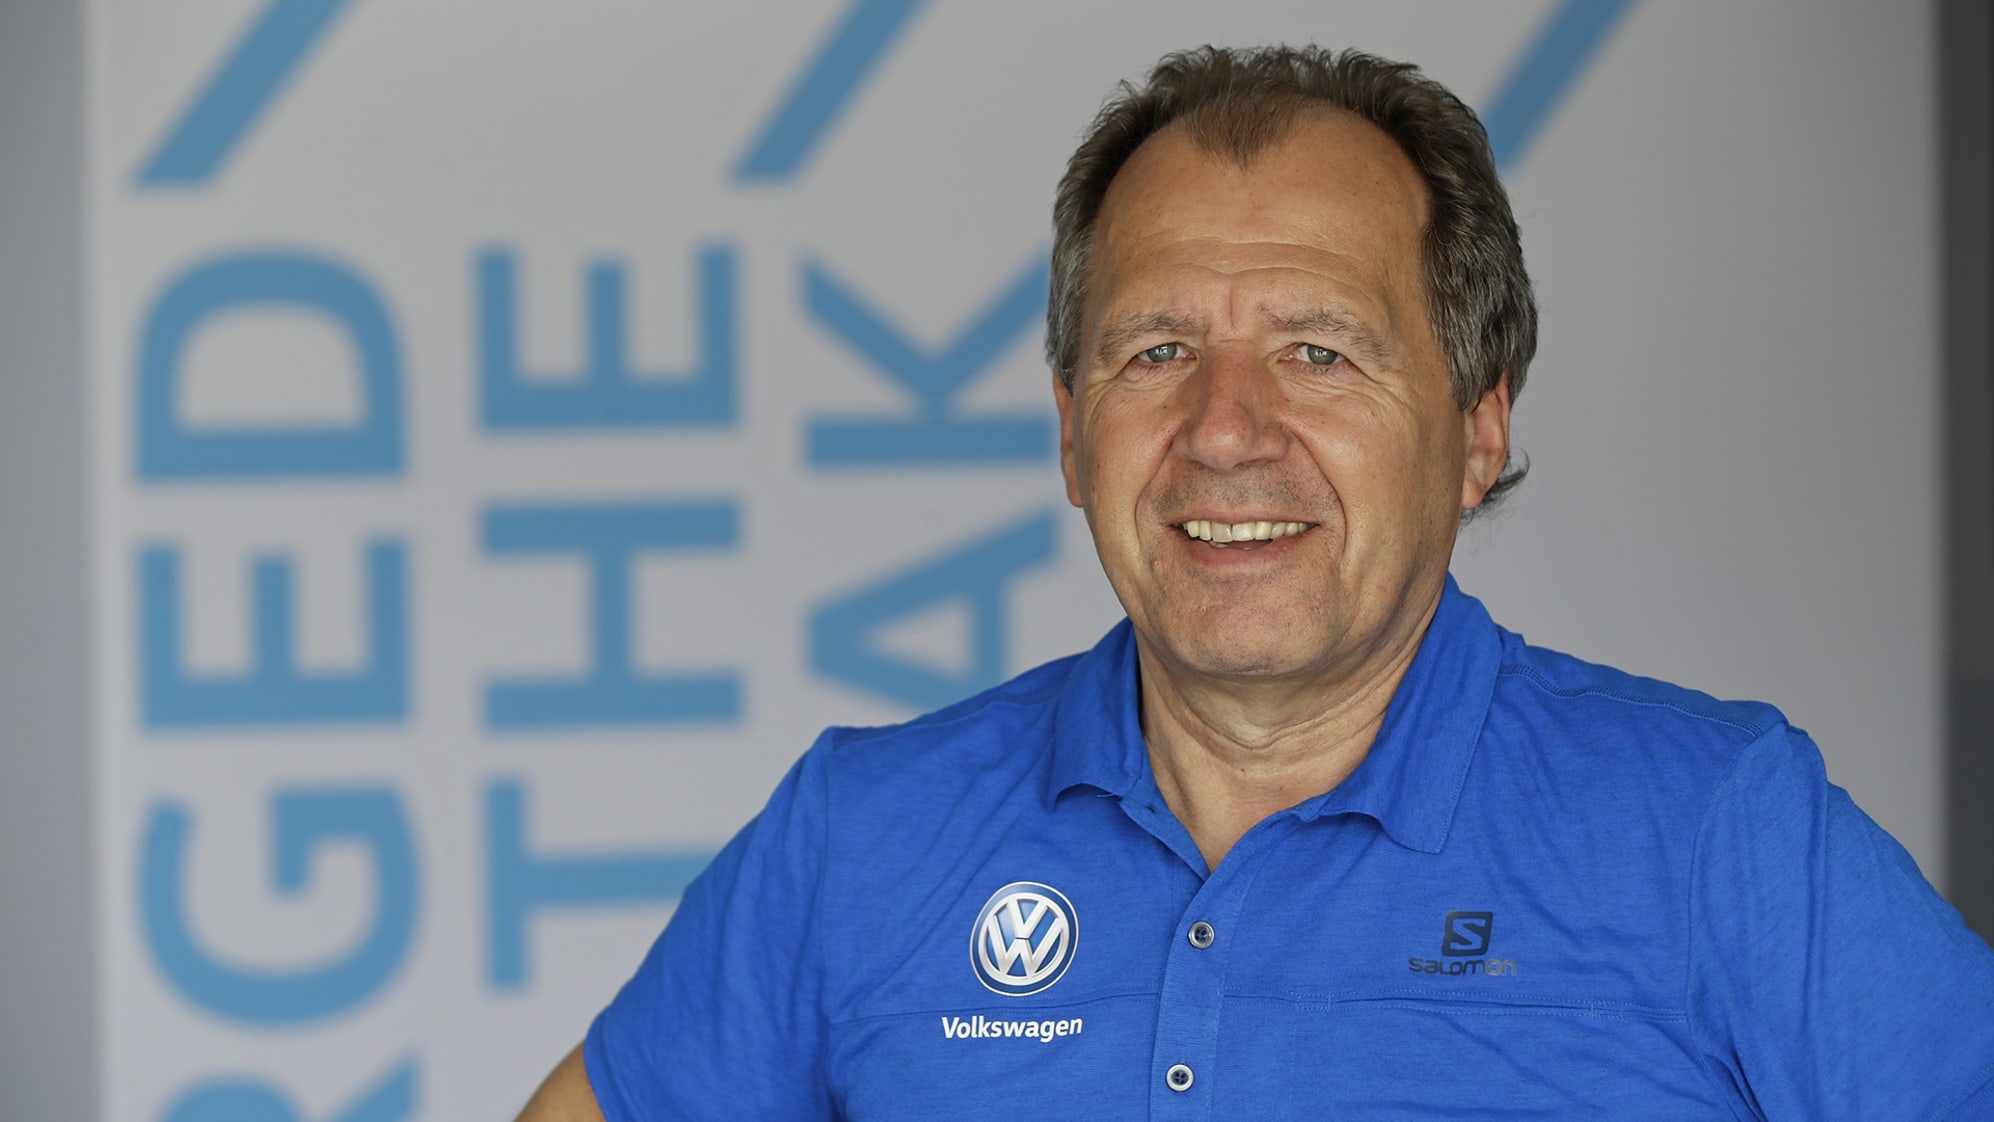 Willy Rampf jako dyrektor techniczny Volkswagena